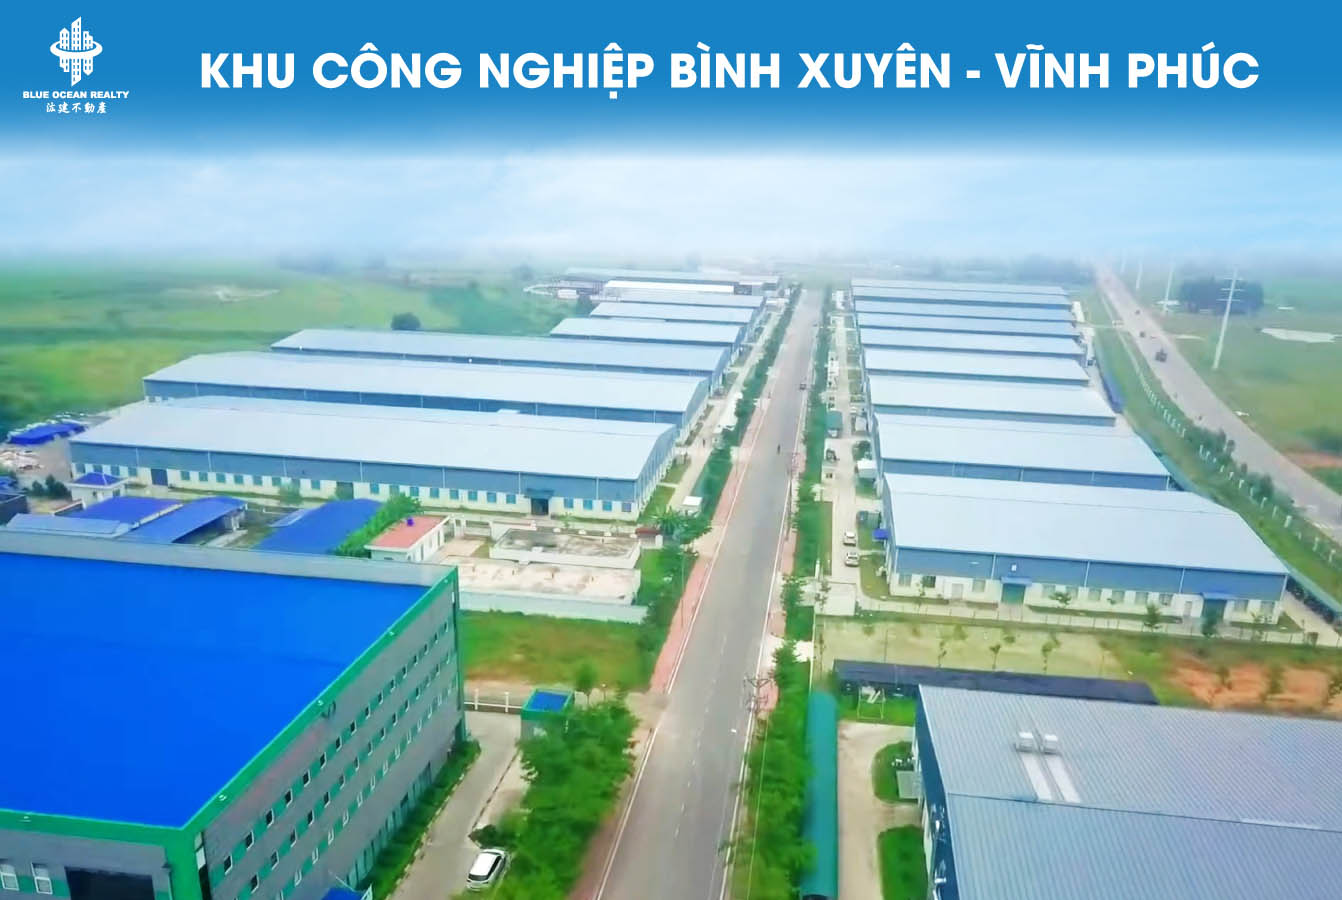 Khu công nghiệp (KCN) Bình Xuyên tỉnh Vĩnh Phúc